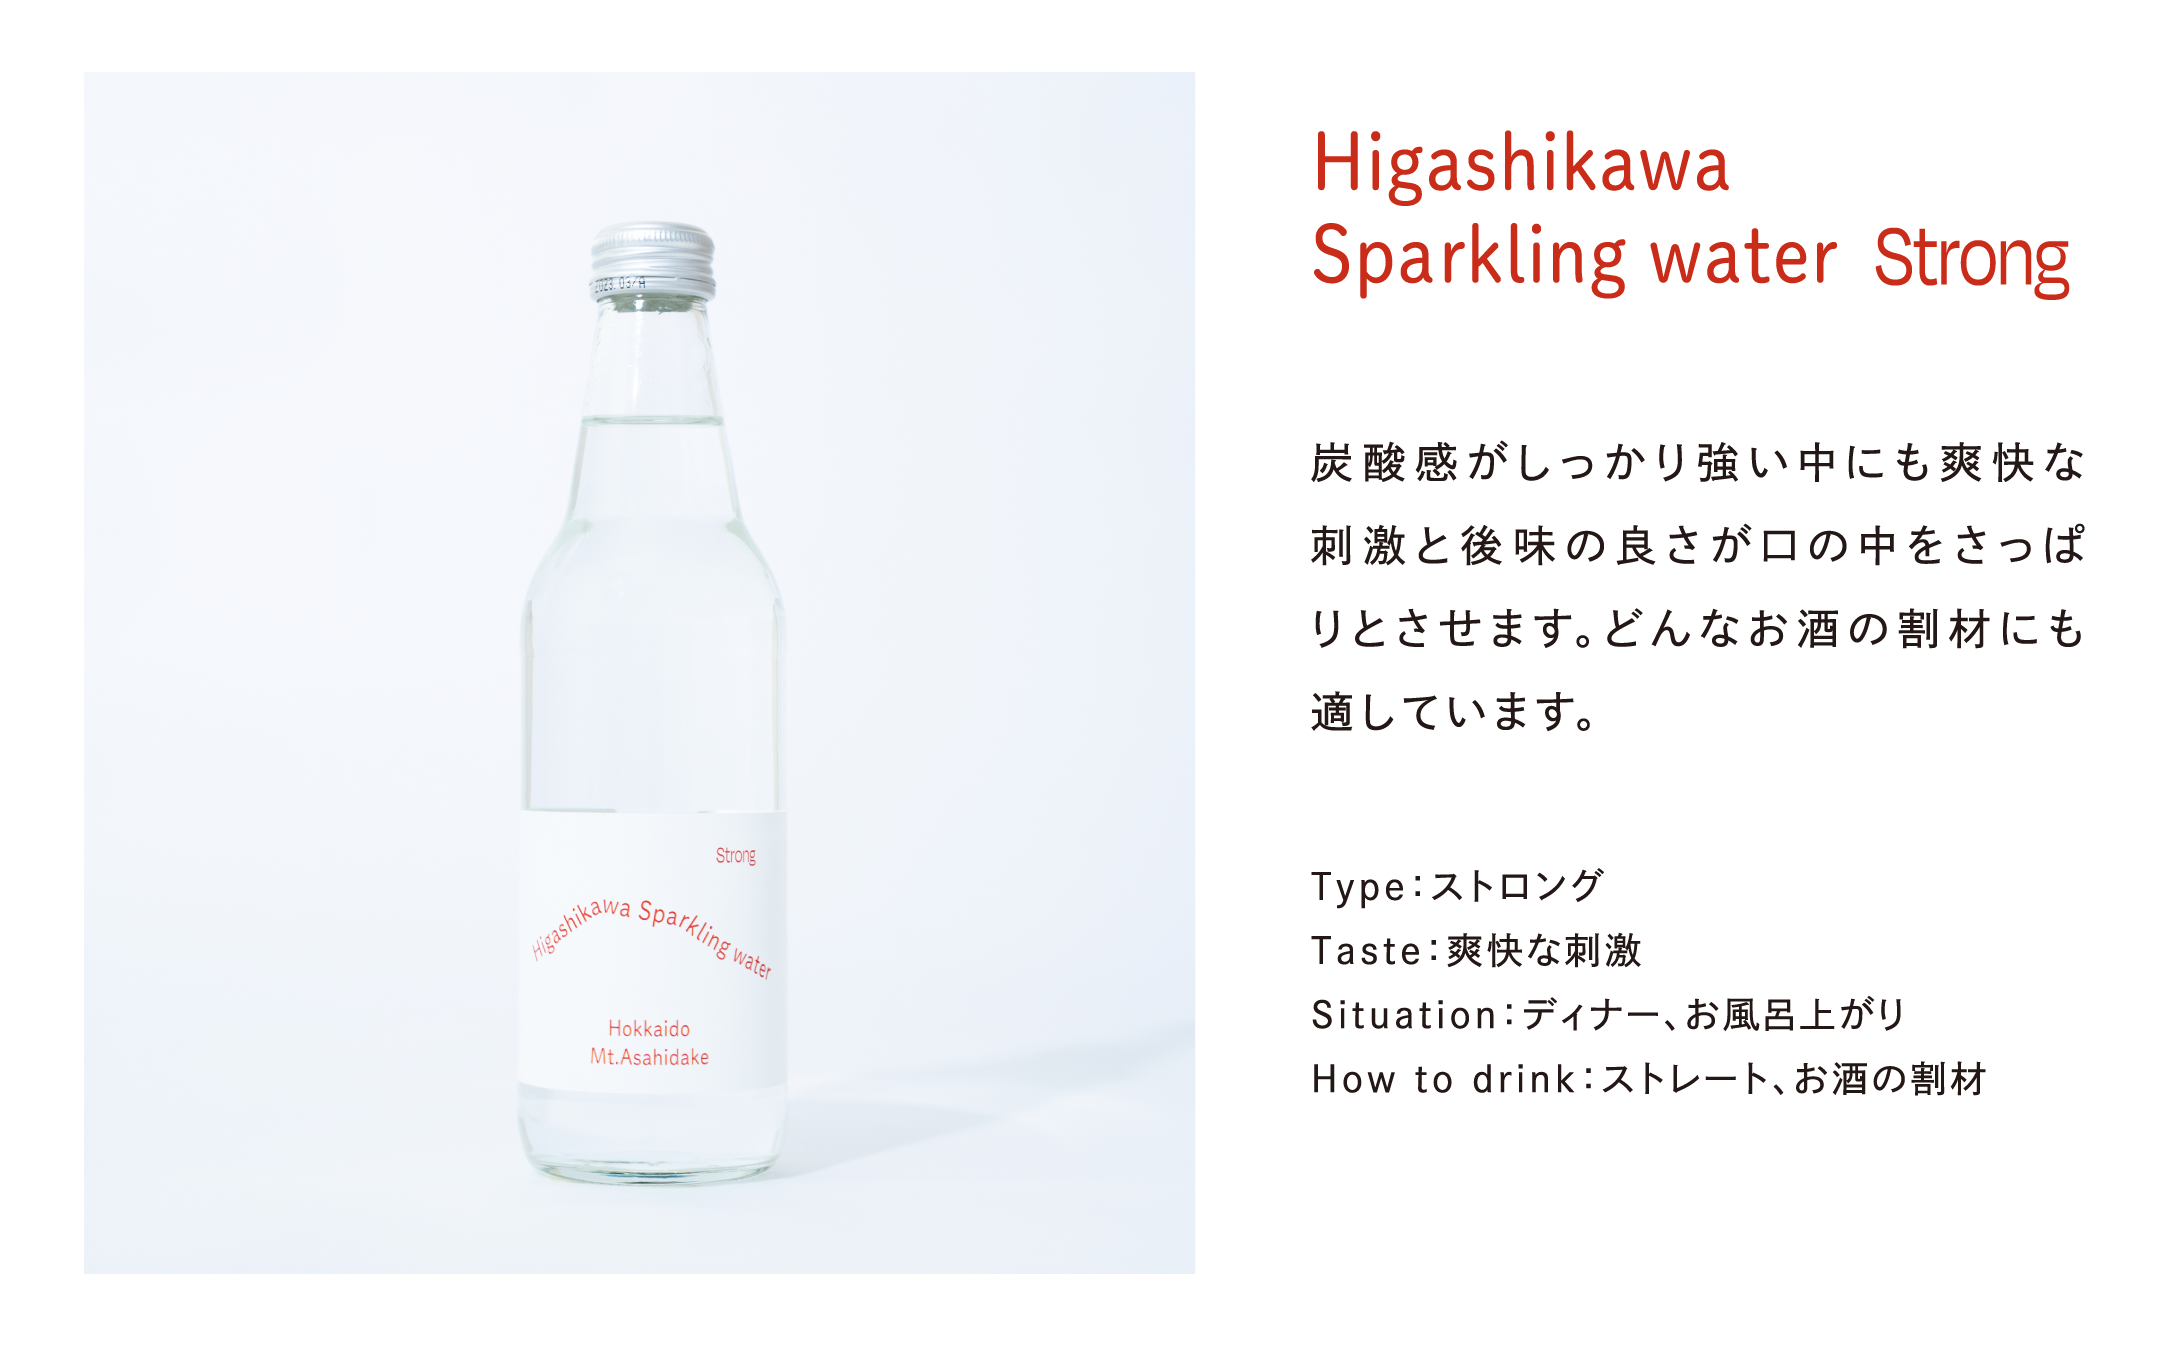 Higashikawa Sparkling water (東川スパークリングウォ―ター）Strong:強発泡タイプ 24本入り【22002001】